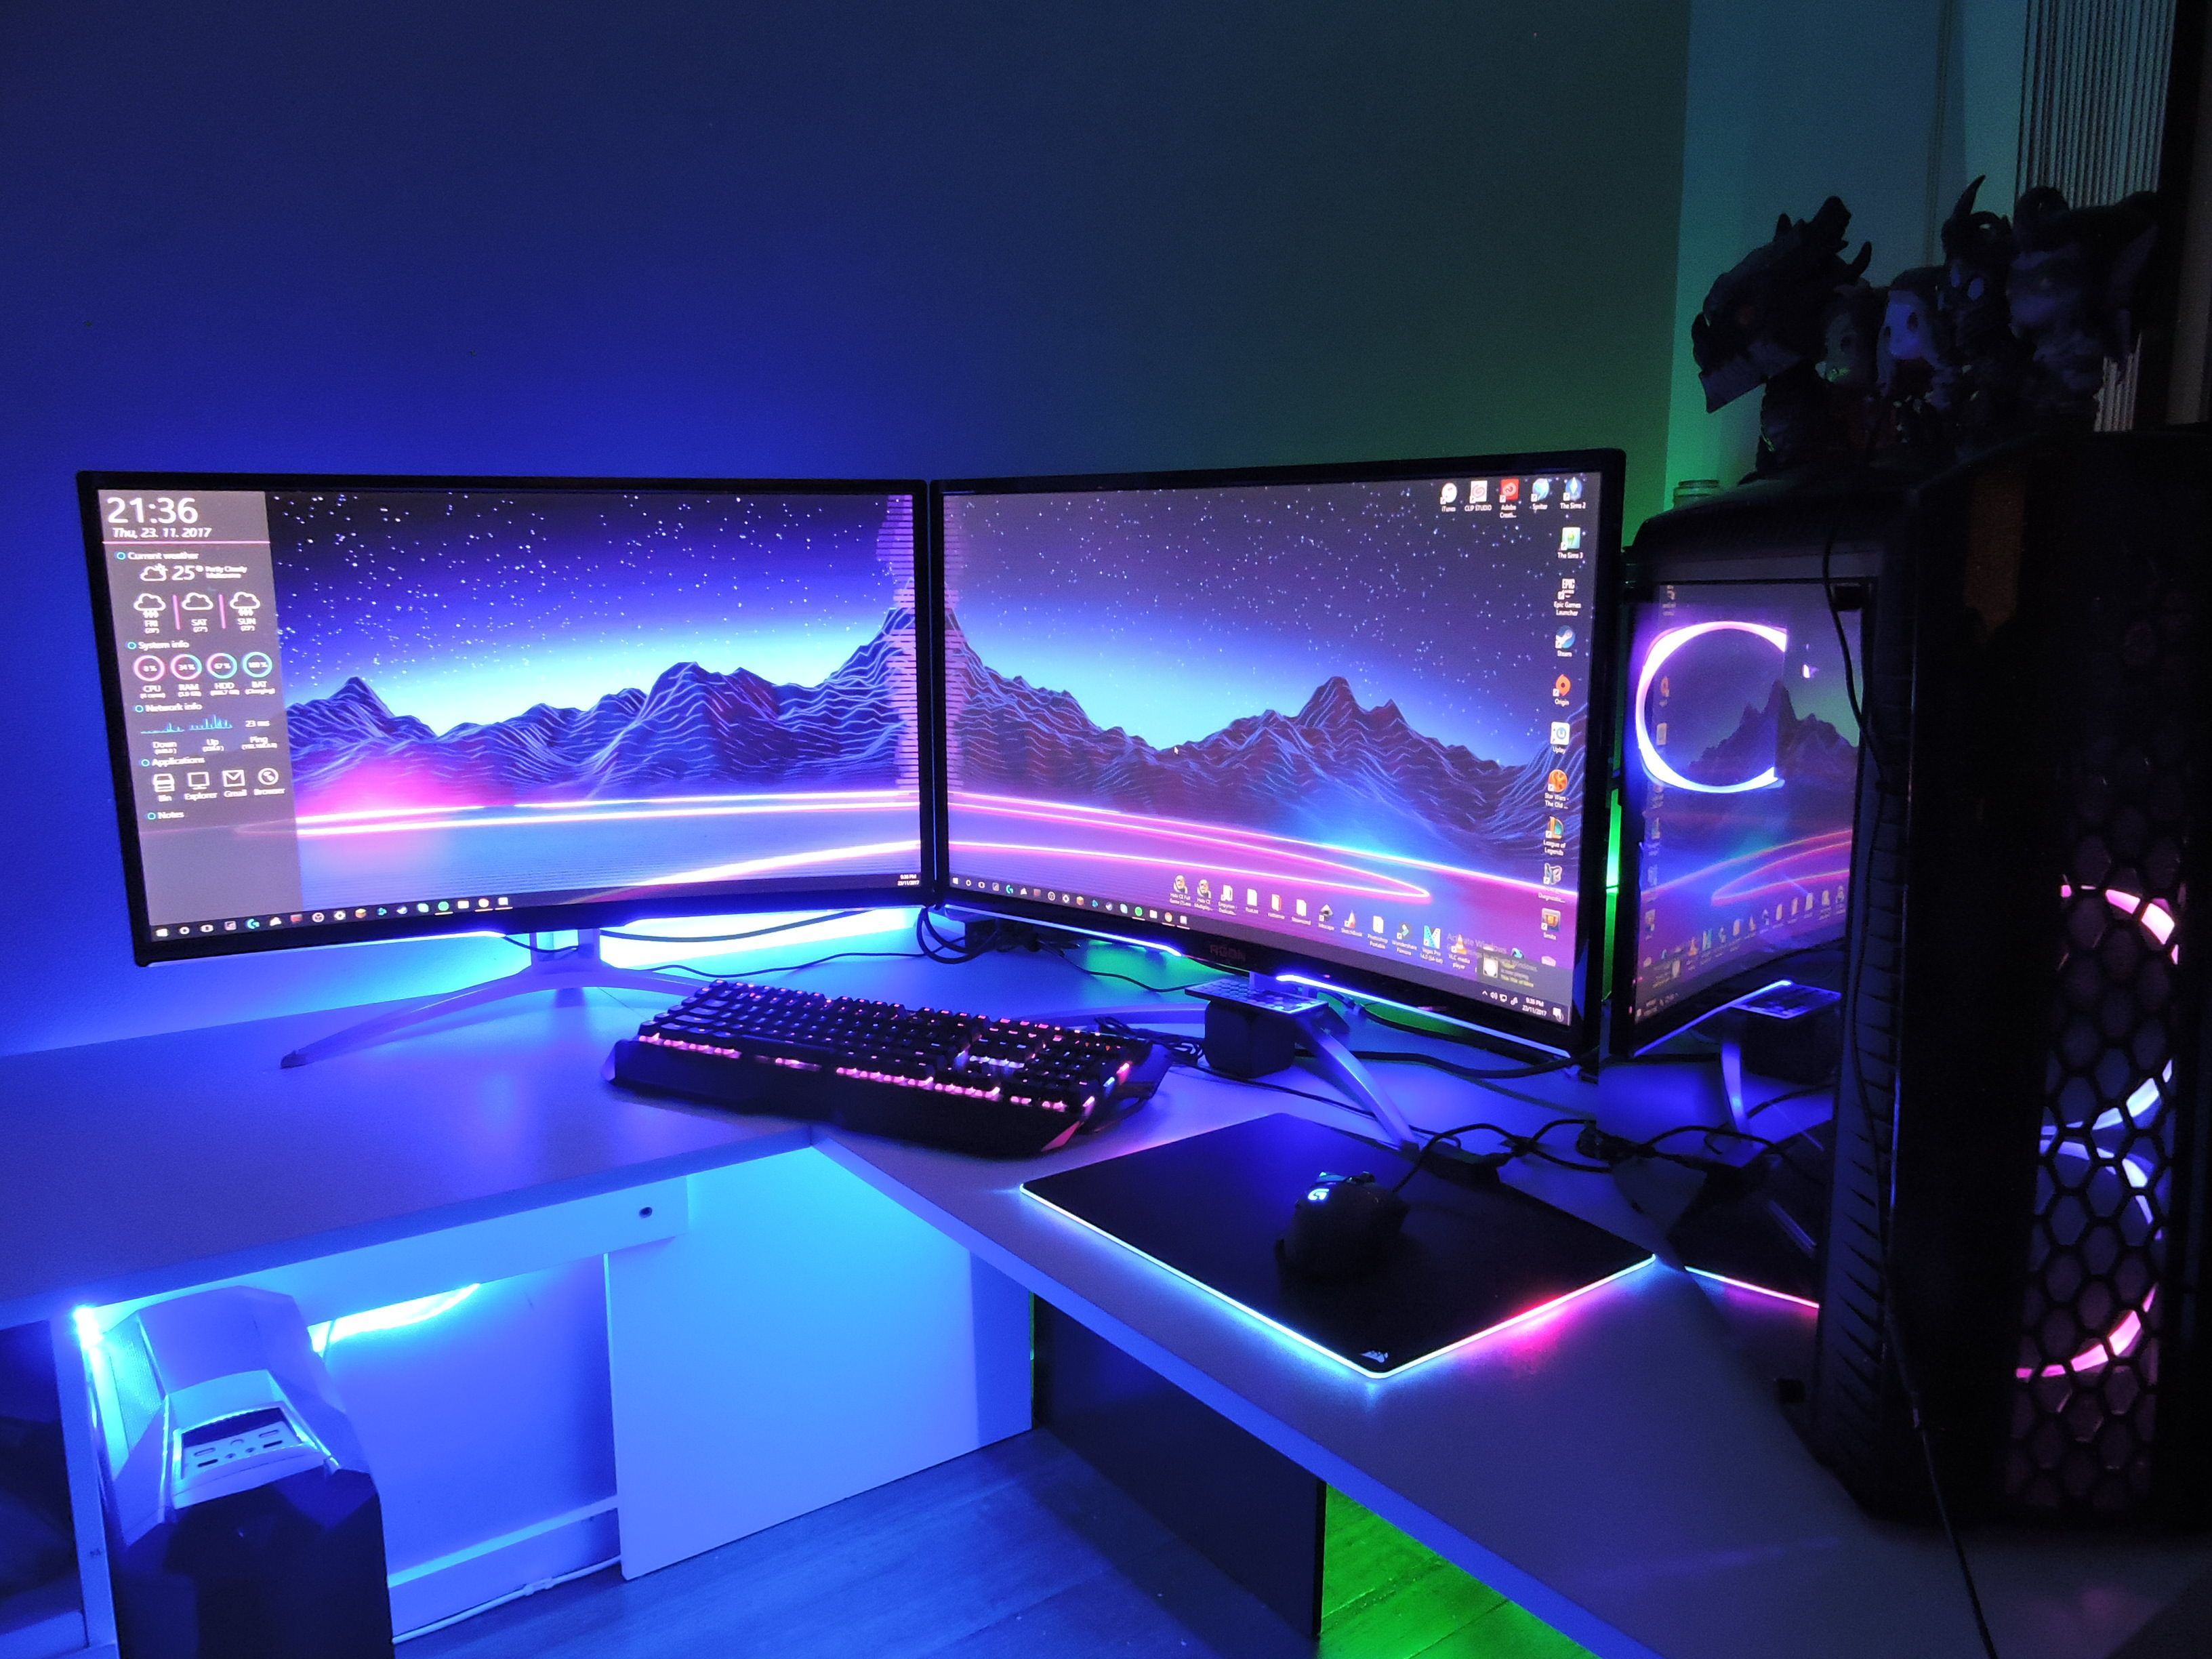 gaming setup wallpaper,anzeigegerät,computerbildschirm,desktop computer,technologie,beleuchtung